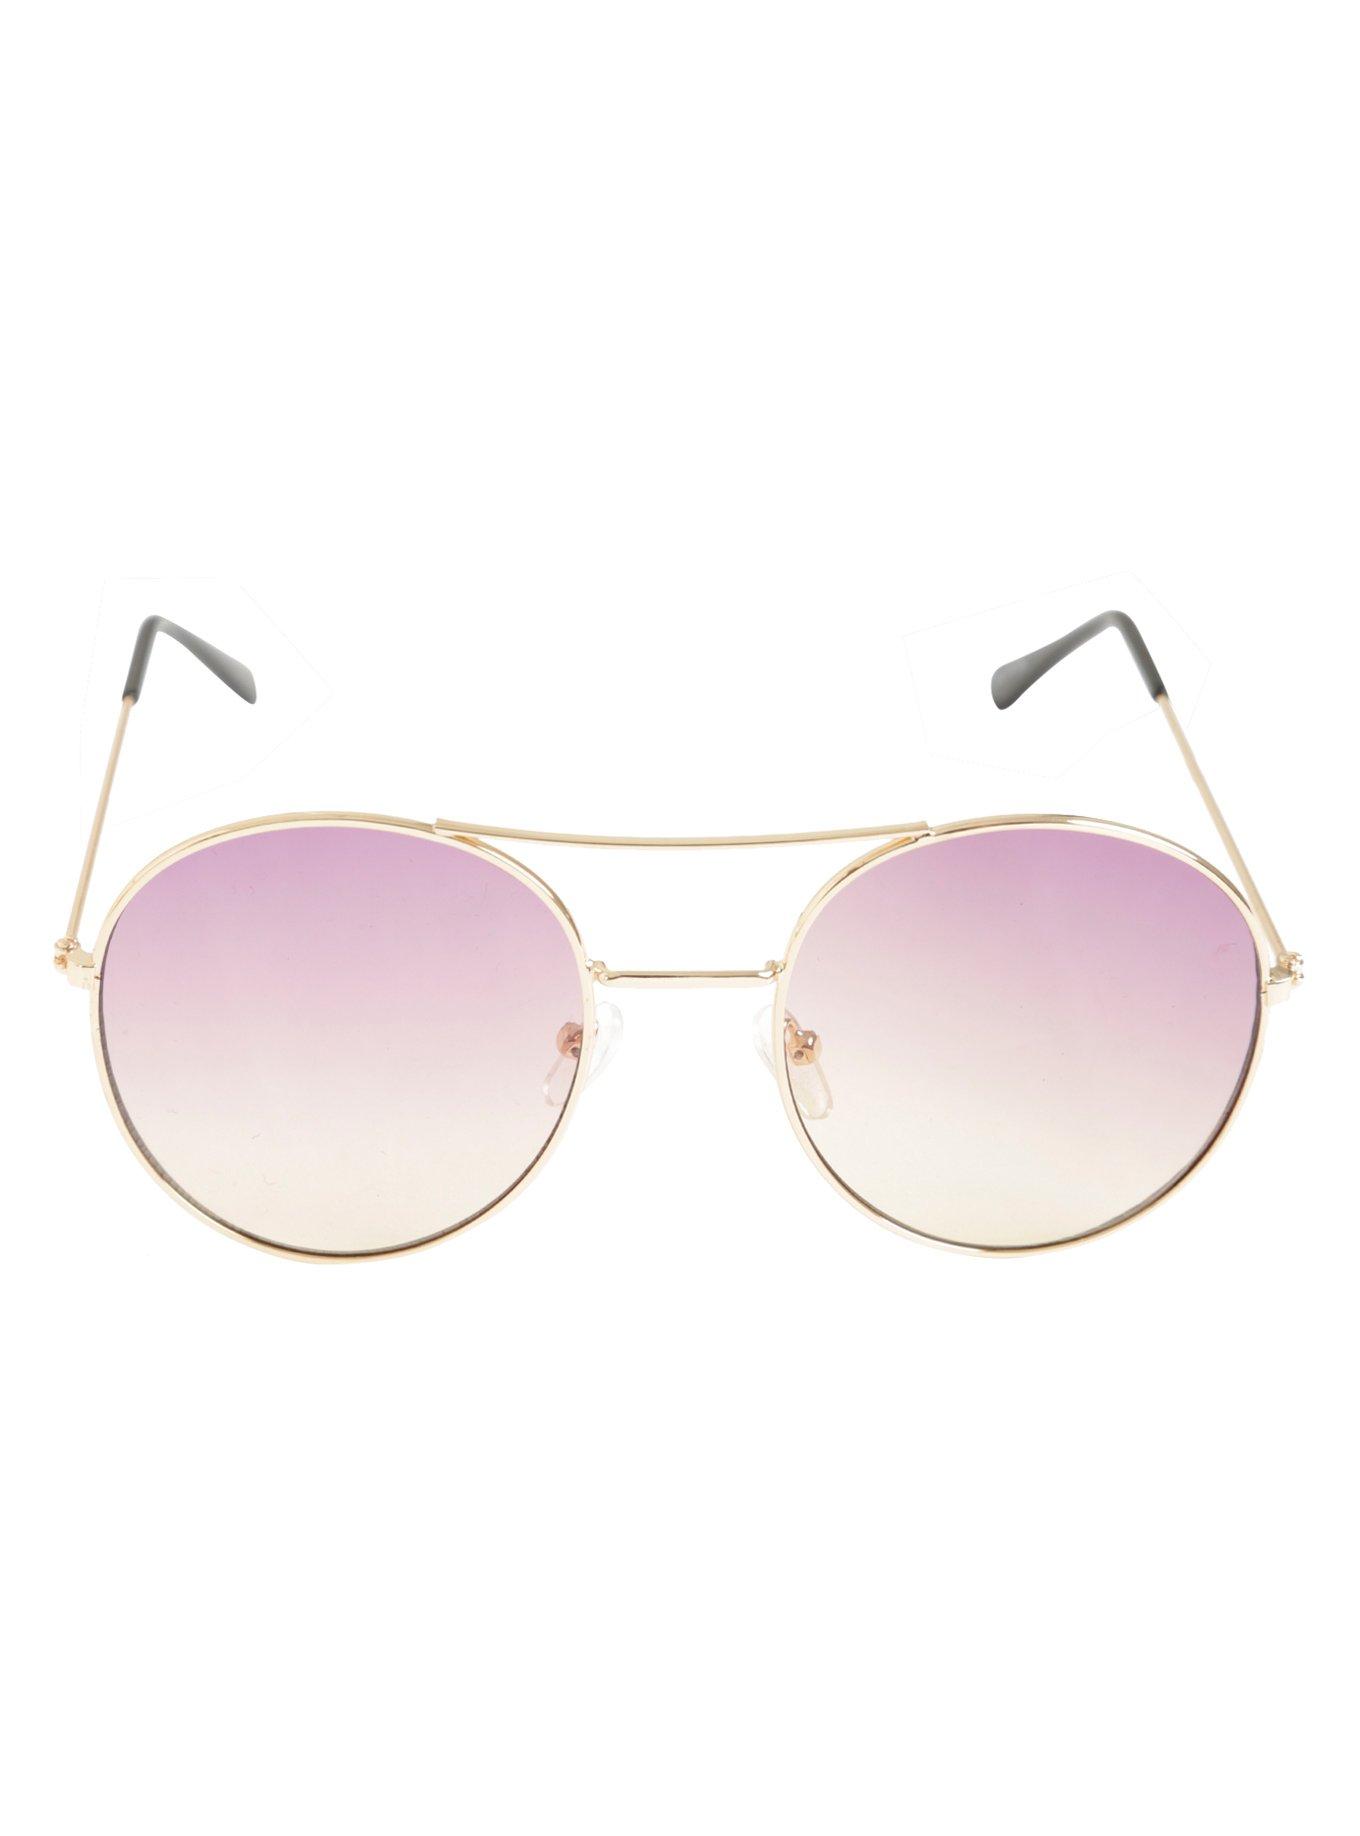 Rose Gold Top Bridge Round Sunglasses, , alternate